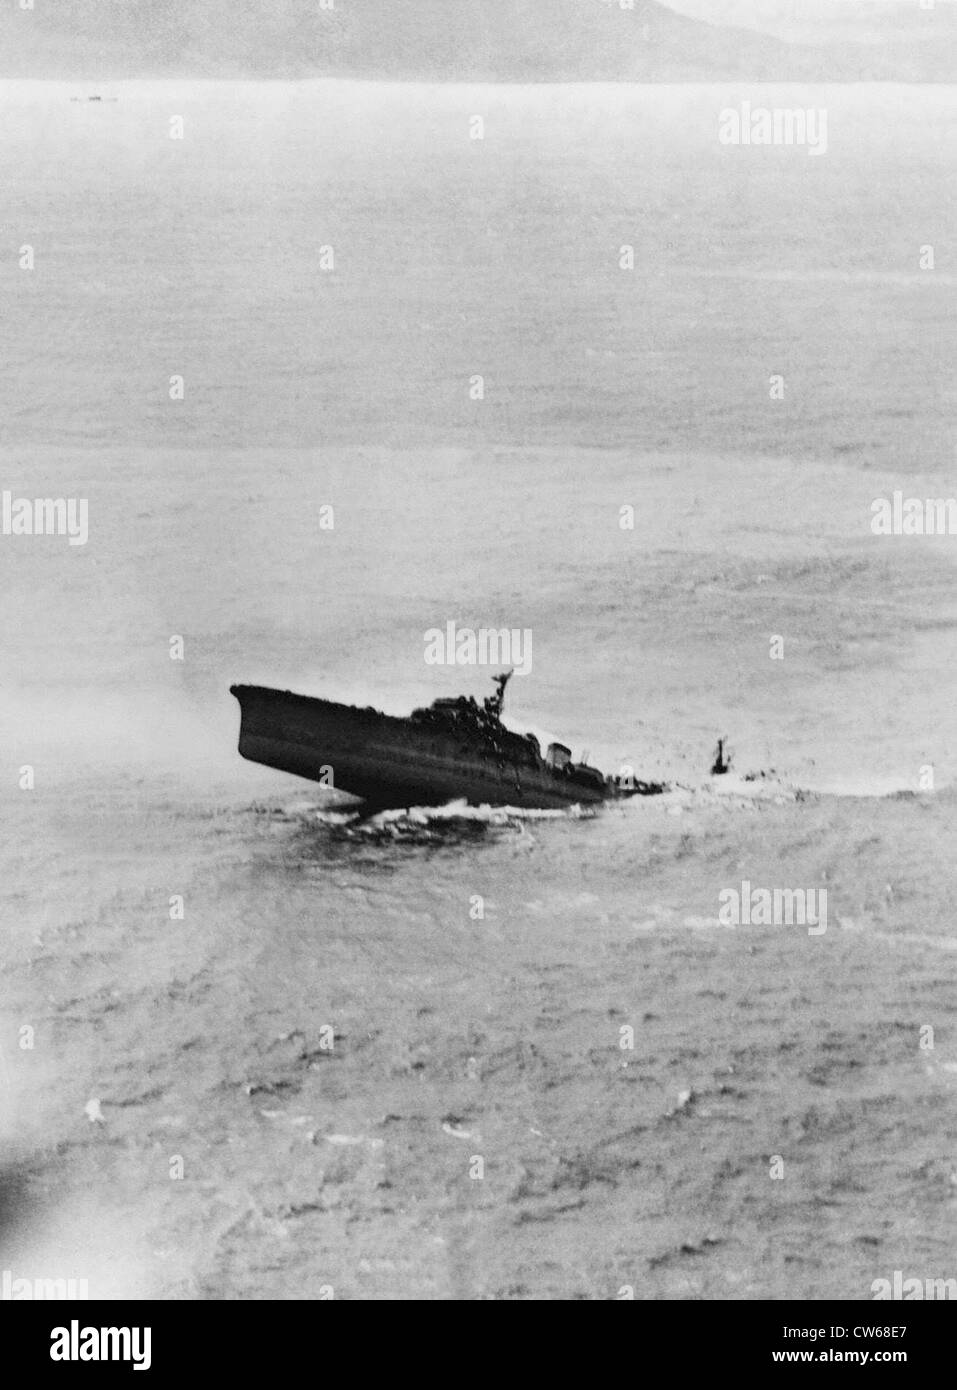 El crucero ligero Kashii japonés "naufragio", 12 de enero de 1945. Foto de stock